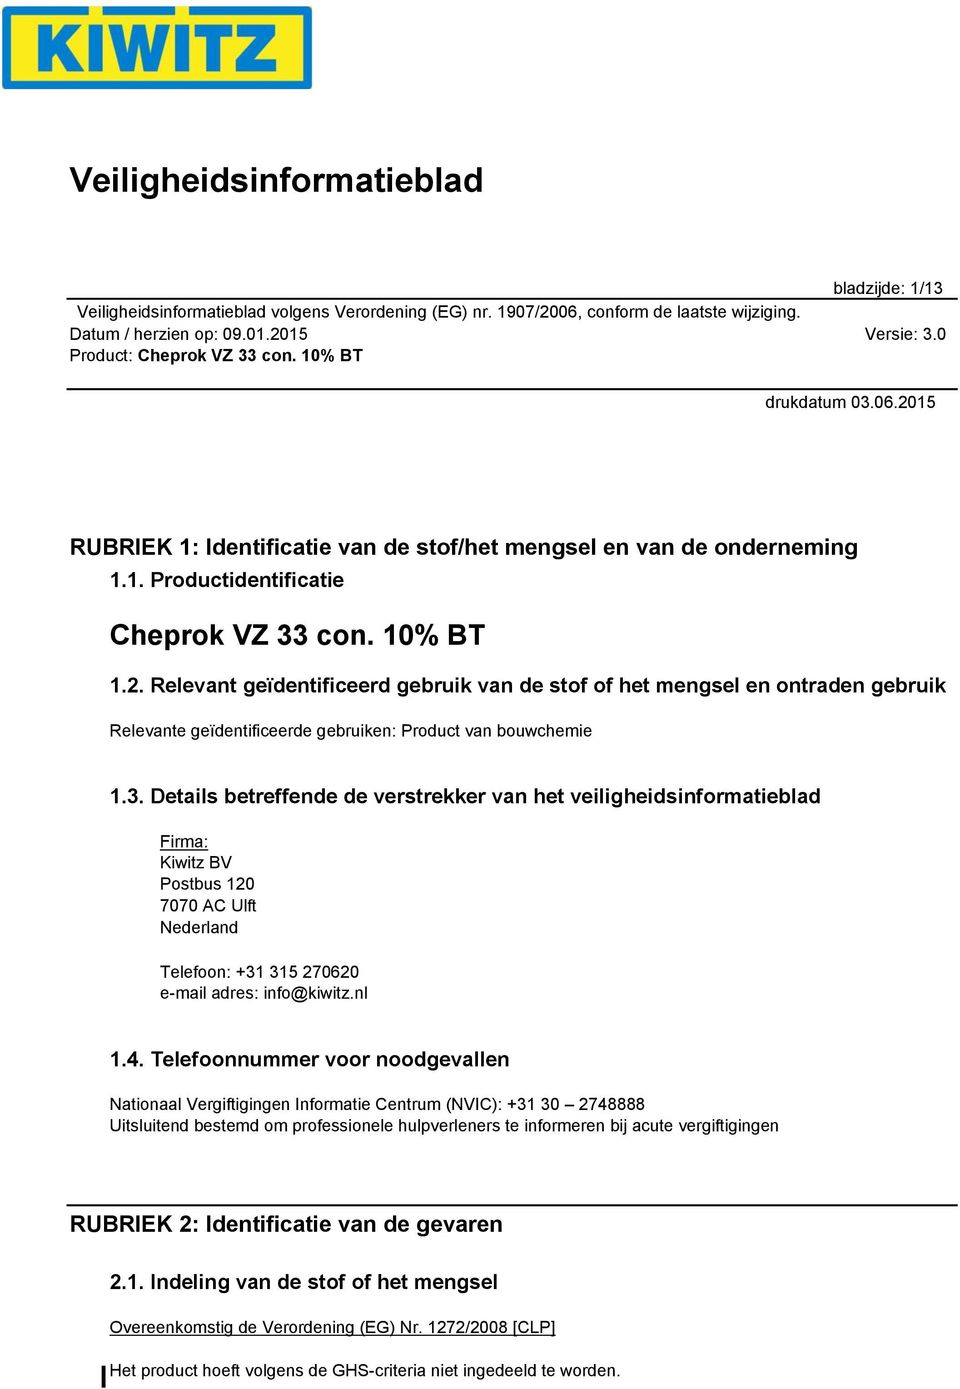 Details betreffende de verstrekker van het veiligheidsinformatieblad Firma: Kiwitz BV Postbus 120 7070 AC Ulft Nederland Telefoon: +31 315 270620 e-mail adres: info@kiwitz.nl 1.4.